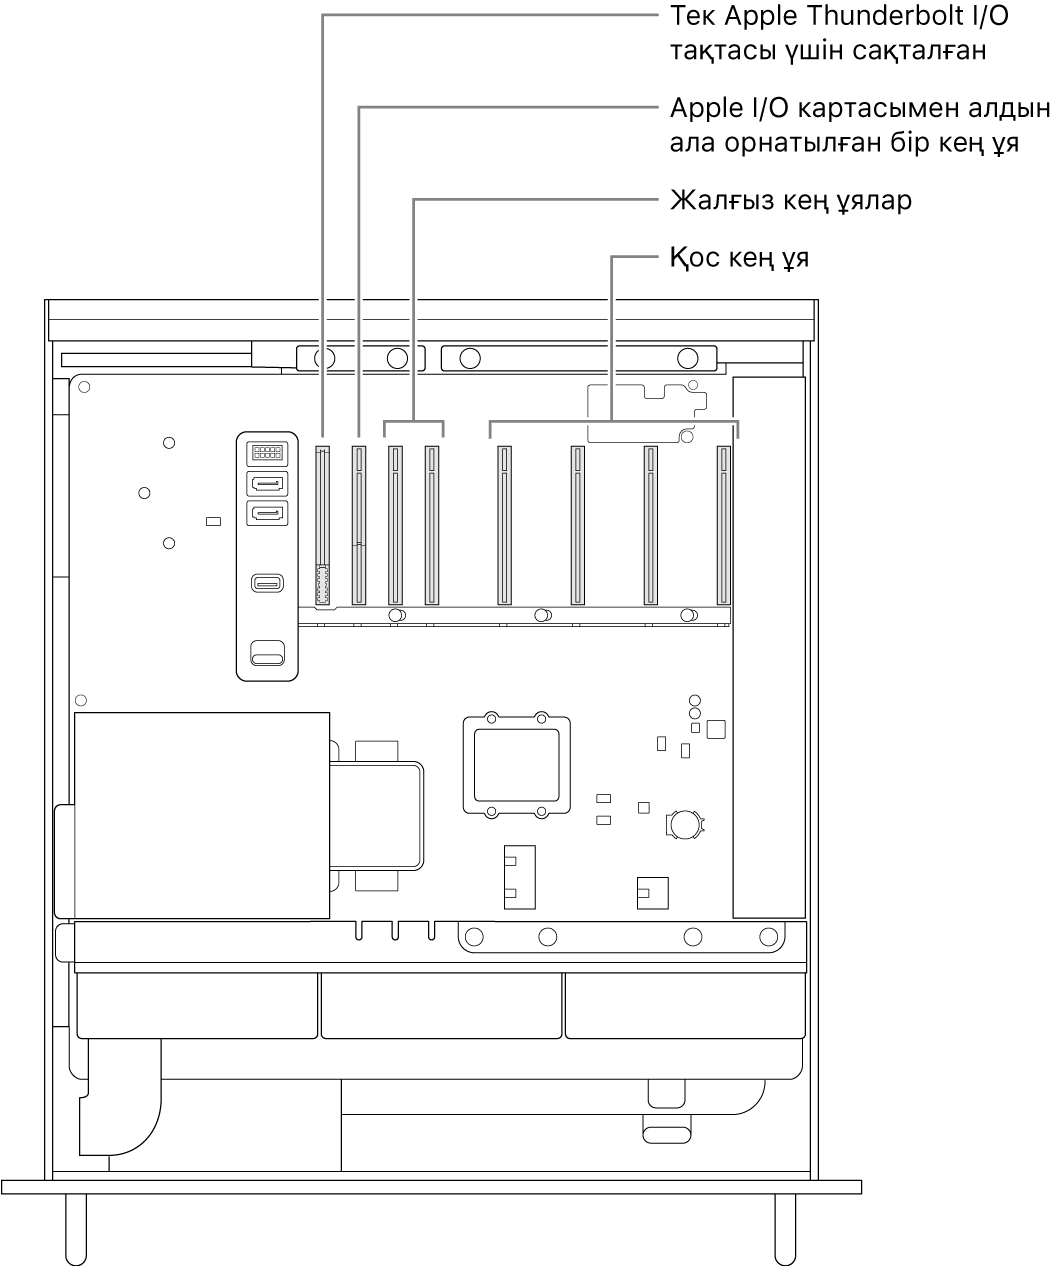 Thunderbolt I/O тақтасының ұясы, Apple I/O картасының бір кең ұясы, екі кең ұя және төрт қос кең ұя орнын көрсетіп тұрған тілше деректері бар ашық Mac Pro компьютерінің бүйірі.